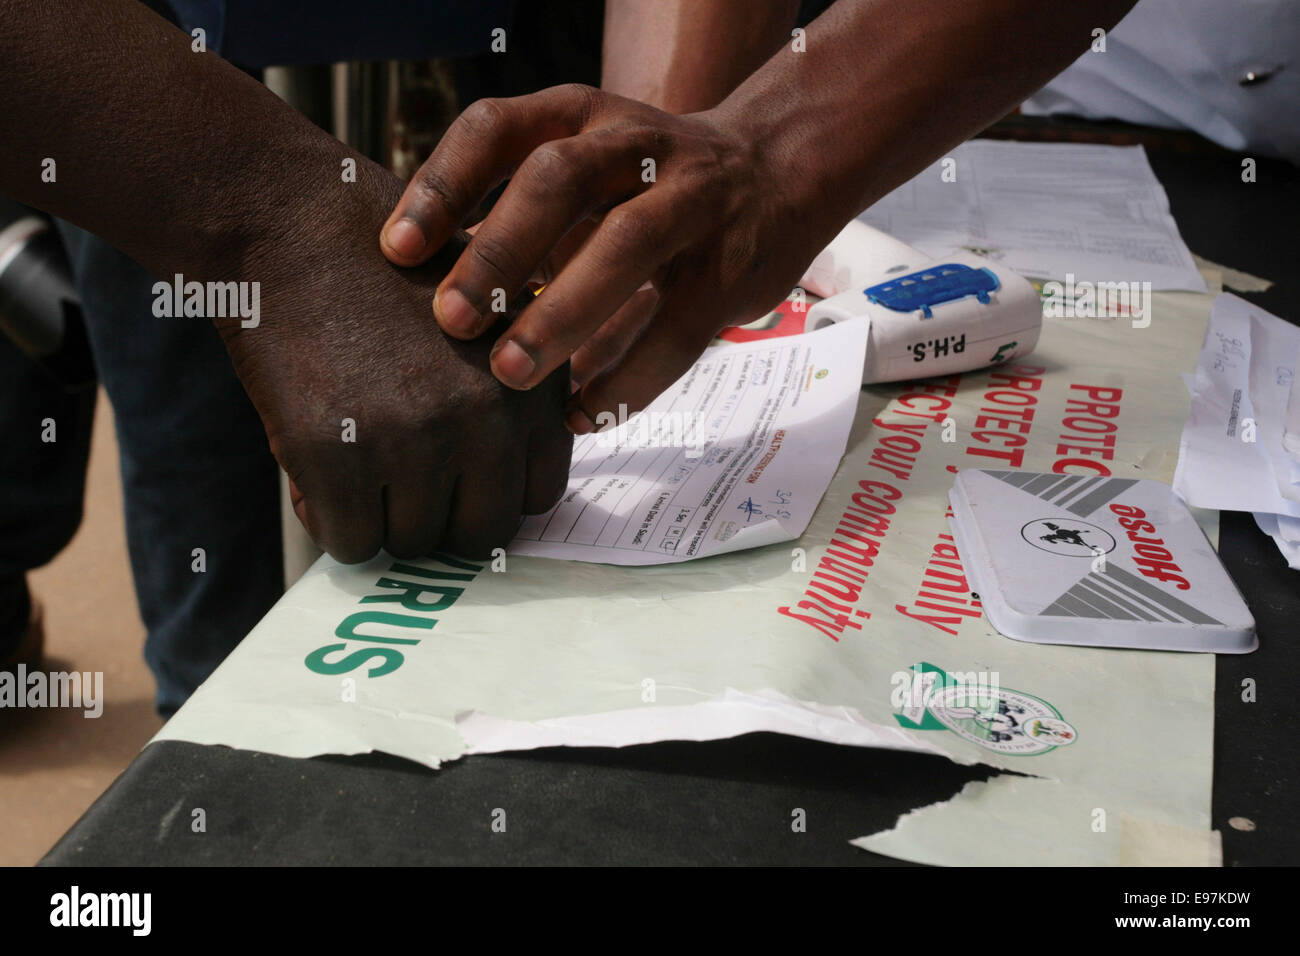 Agent de santé contribue à un analphabète de pouce imprimer un document dans le cadre de l'examen préalable pour les symptômes du virus Ebola à Lagos Nigeria Banque D'Images